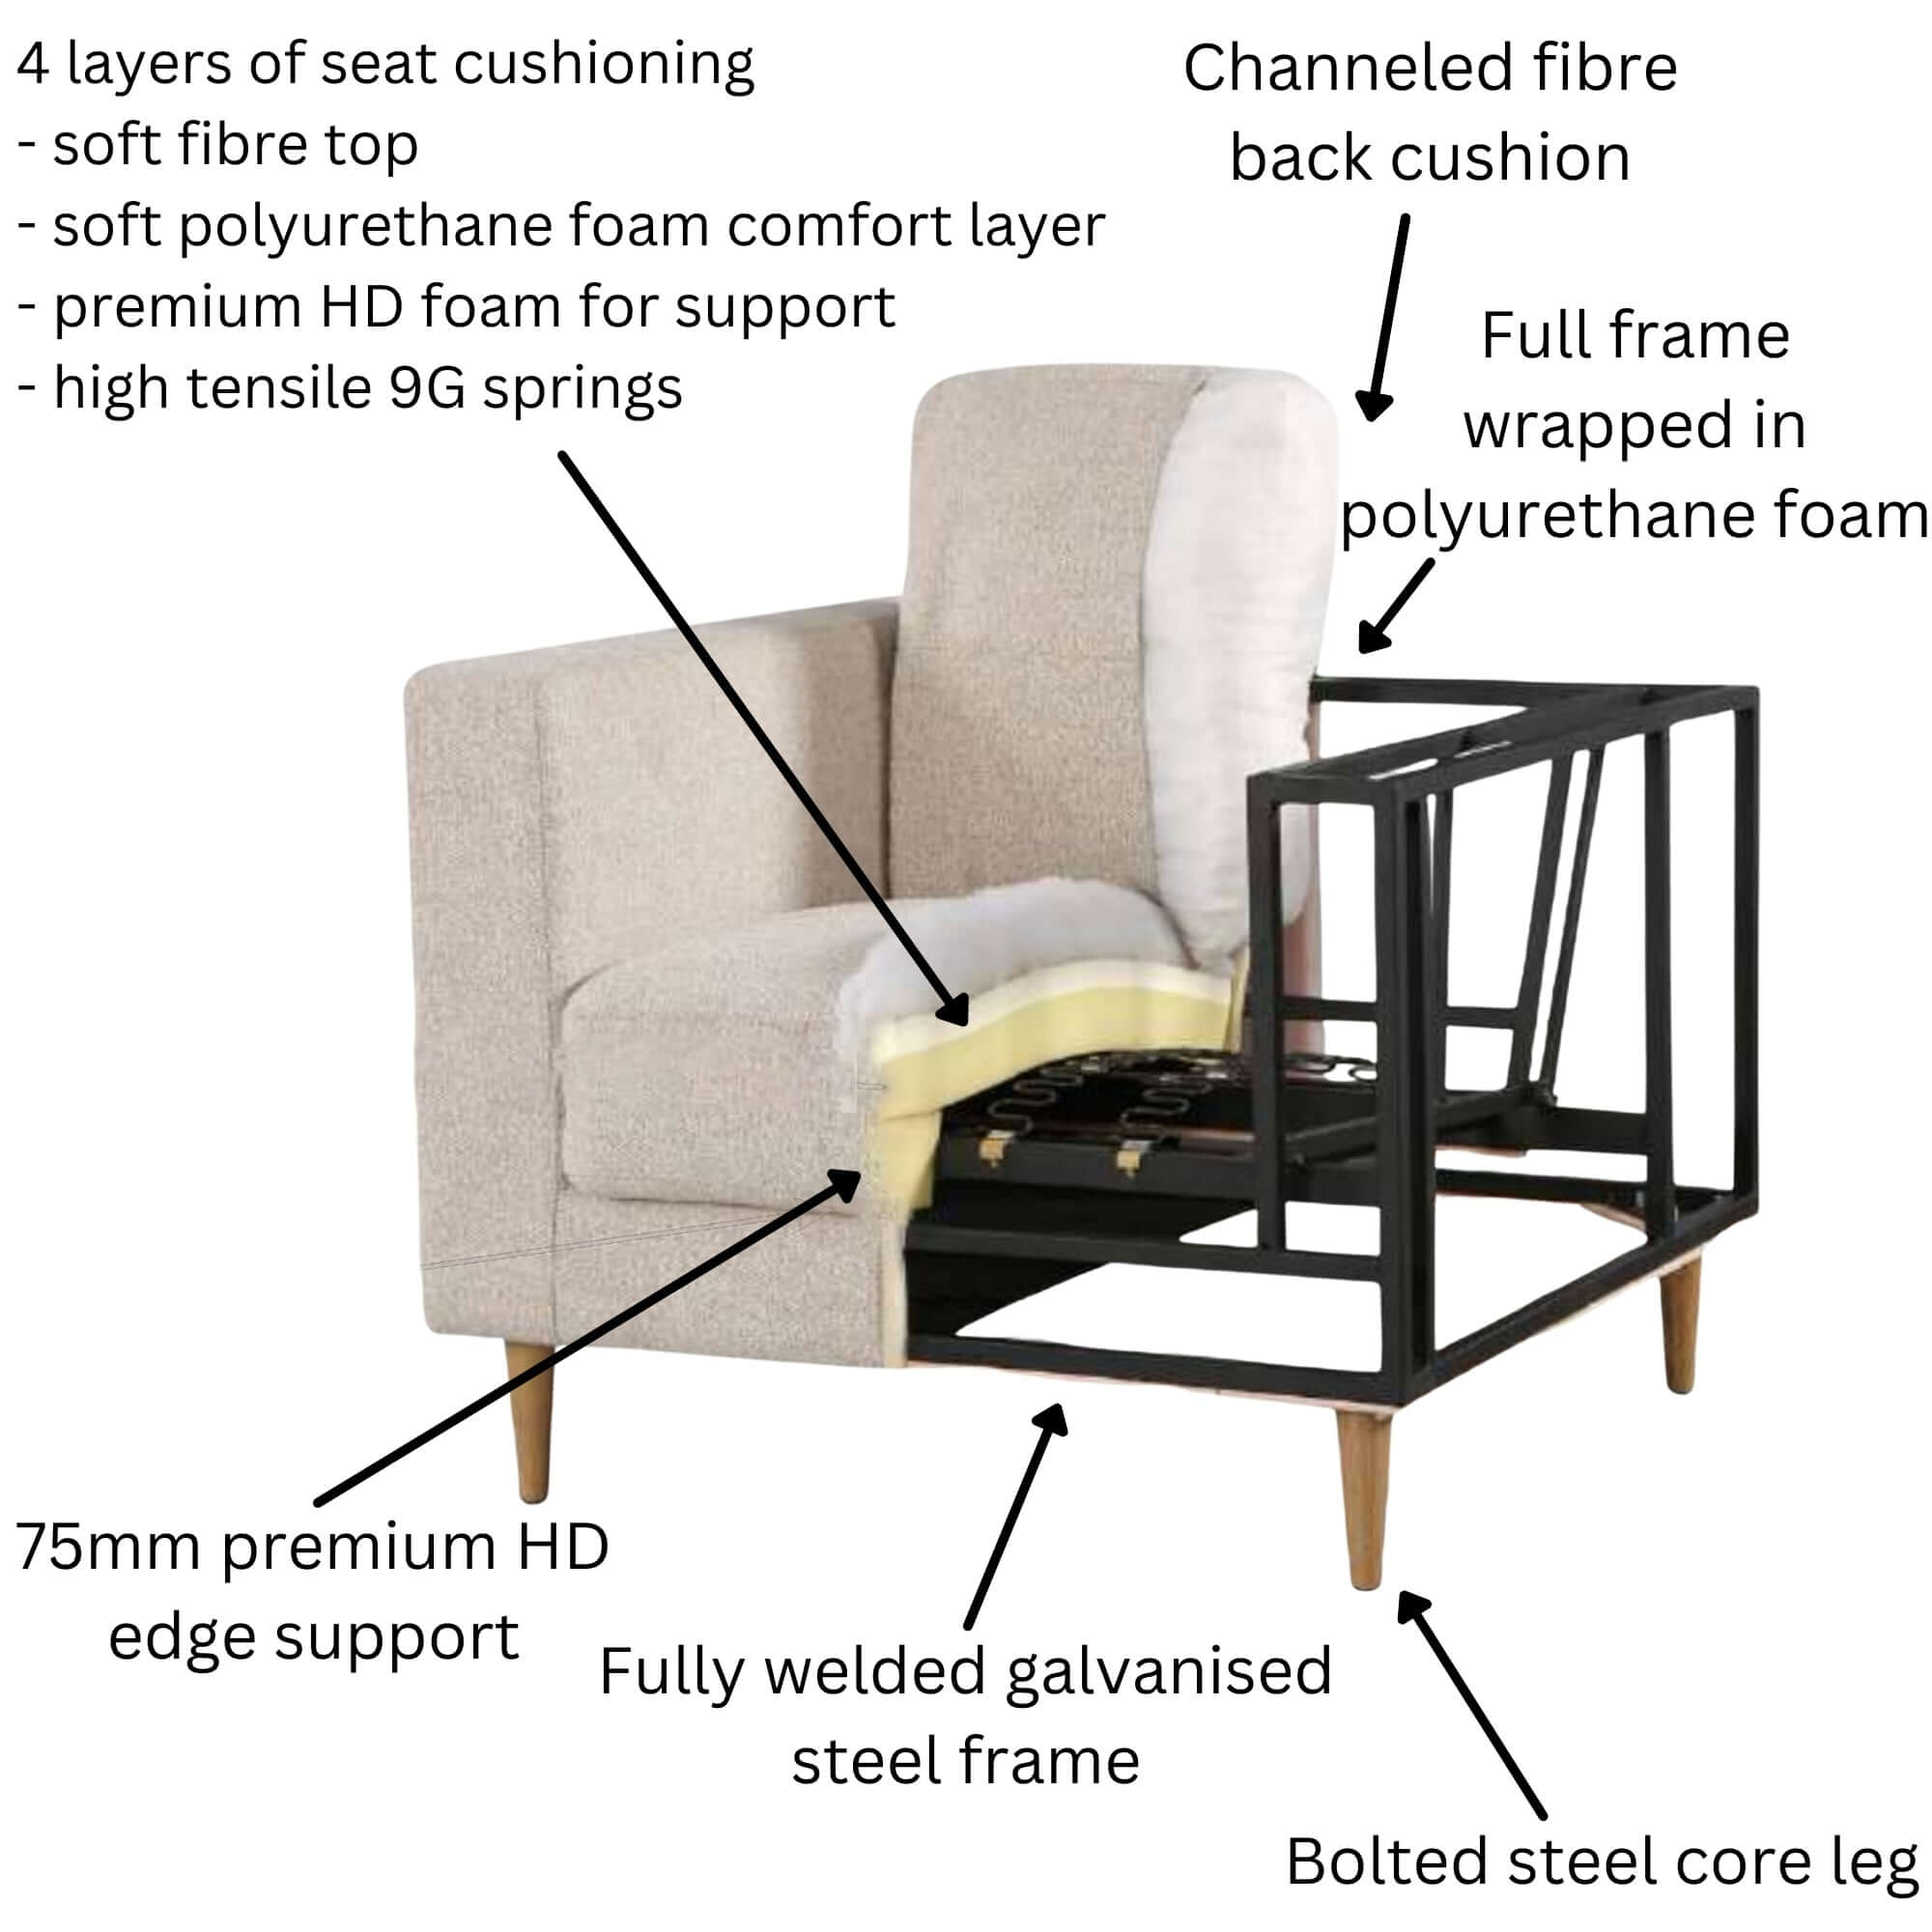 Jolie 3-Seater Fabric Sofa in Quartz - Shop Now-Upinteriors